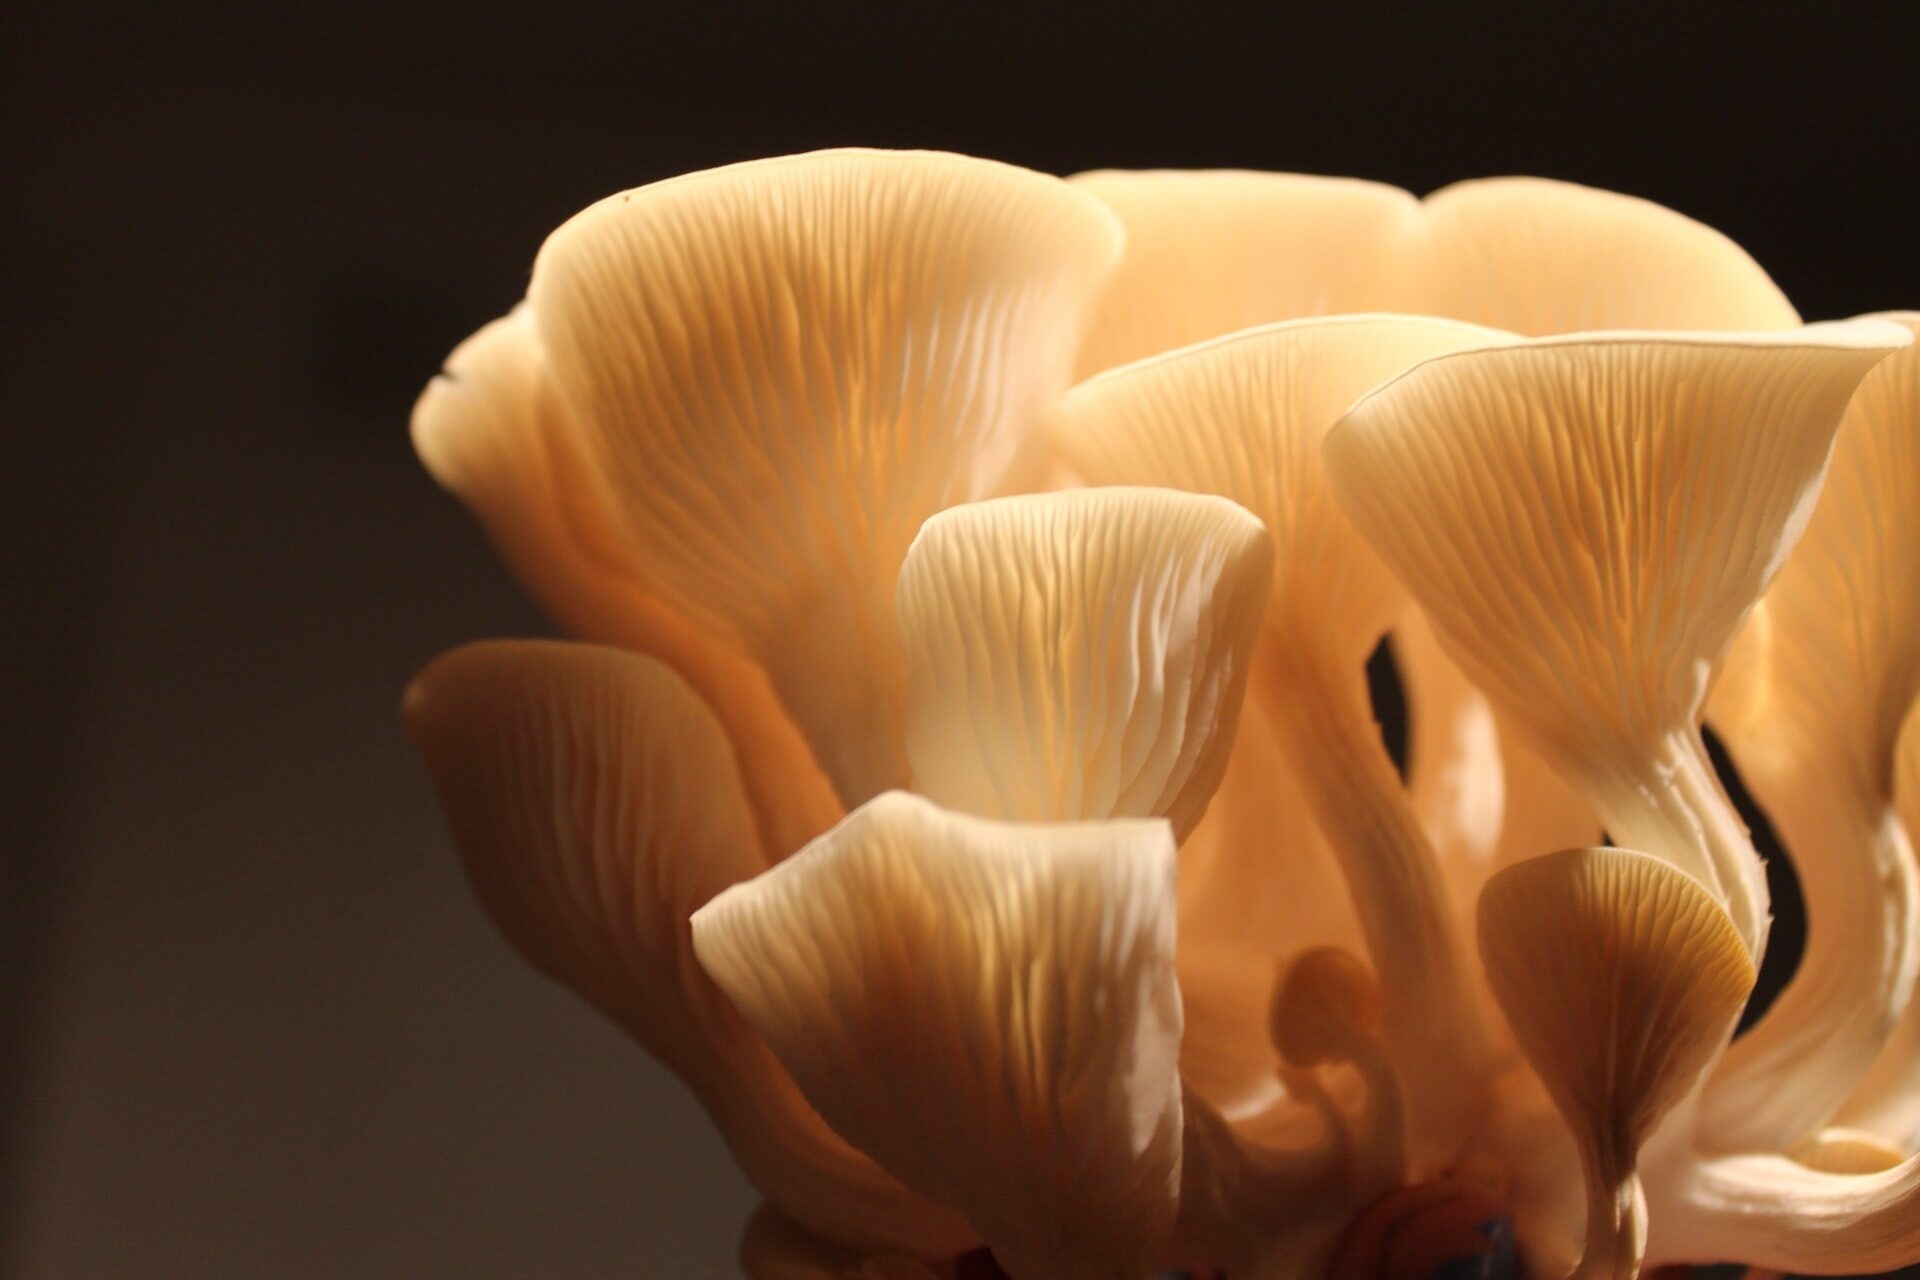 Oyster mushrooms, Gourmet delights, DIY mushroom kits, Culinary adventures, 1920x1280 HD Desktop